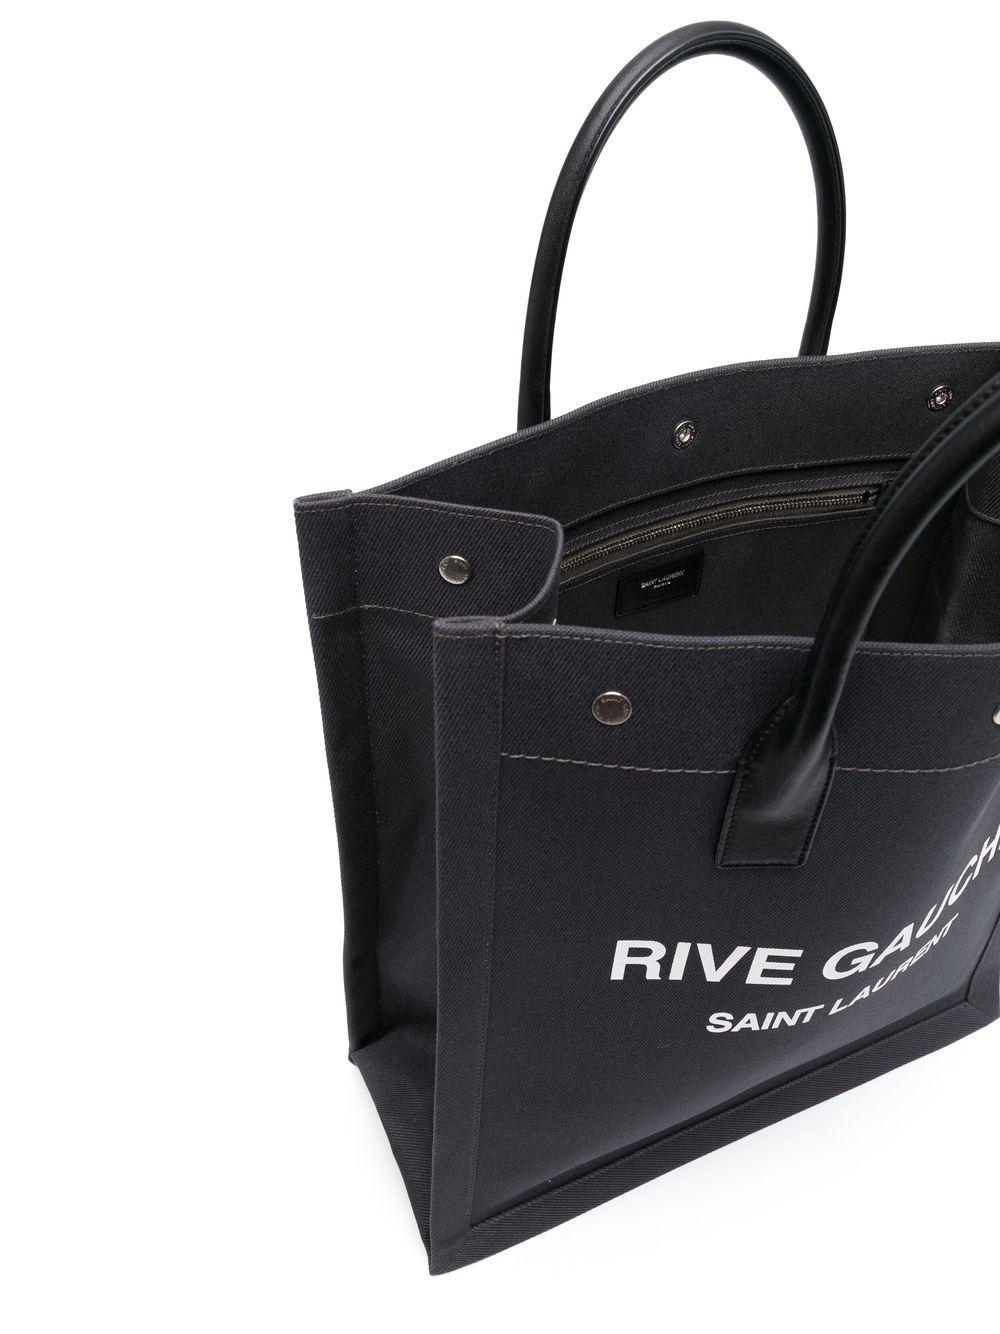 Saint Laurent Rive Gauche black canvas tote bag